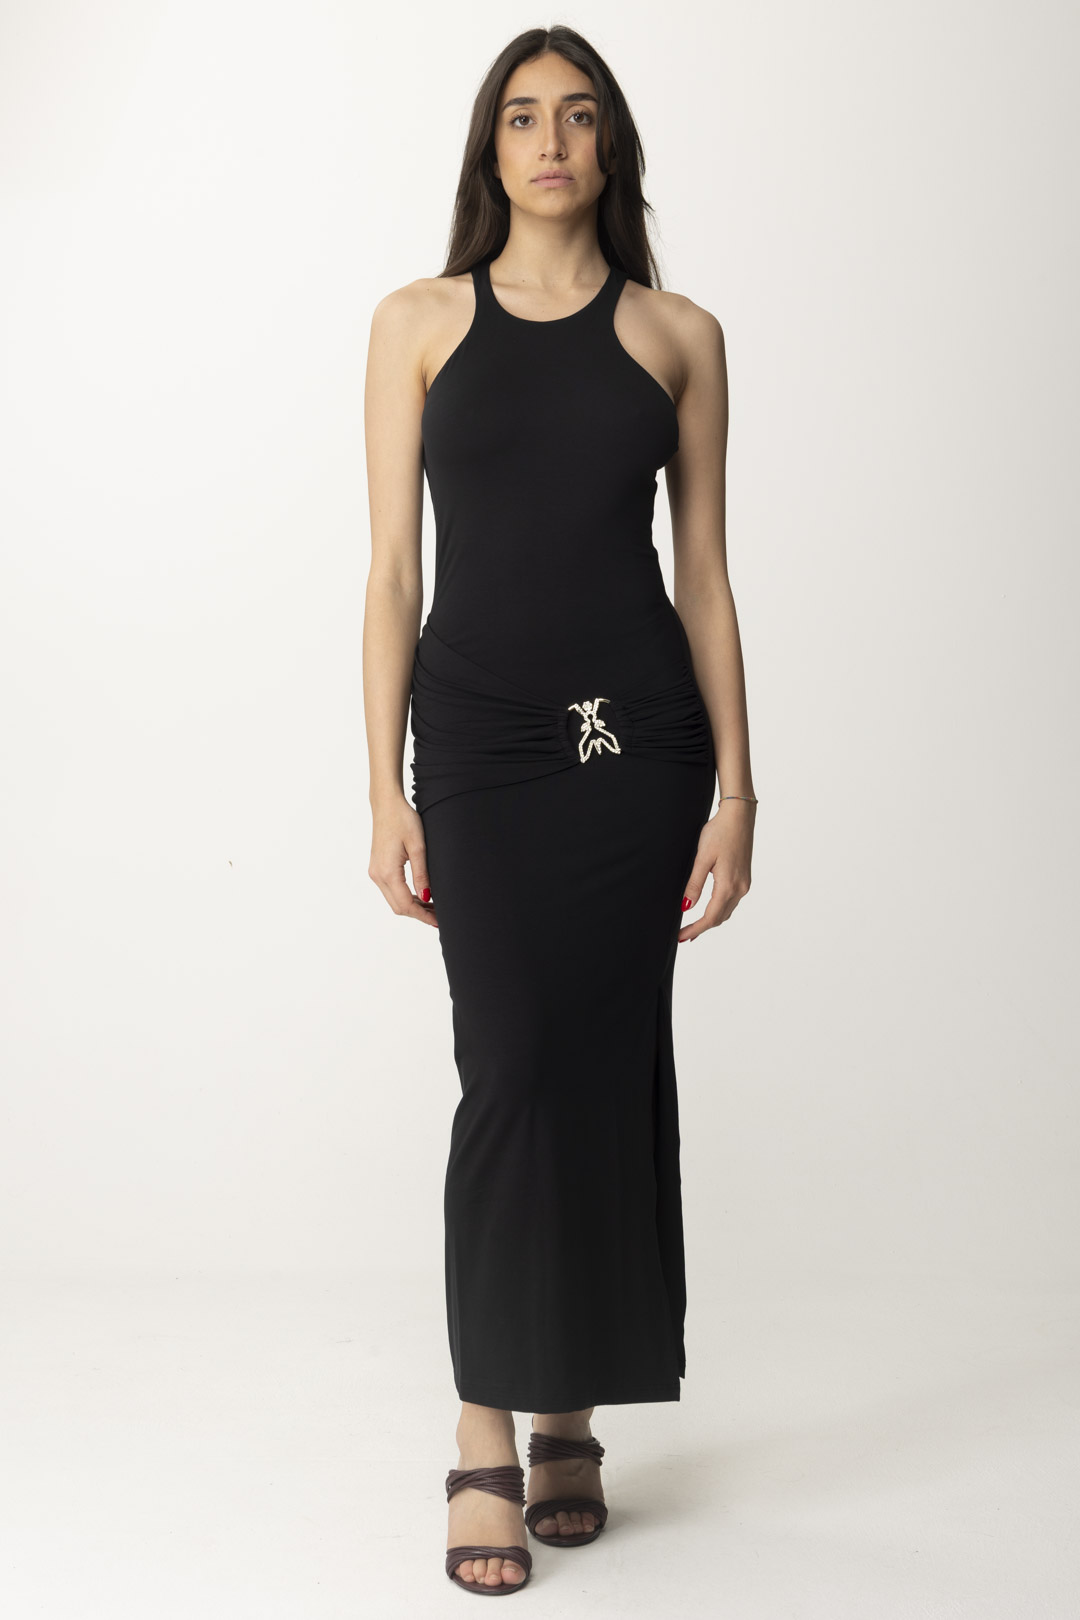 Vorschau: Patrizia Pepe Langes Kleid mit Drapierung und Fly-Logo Nero